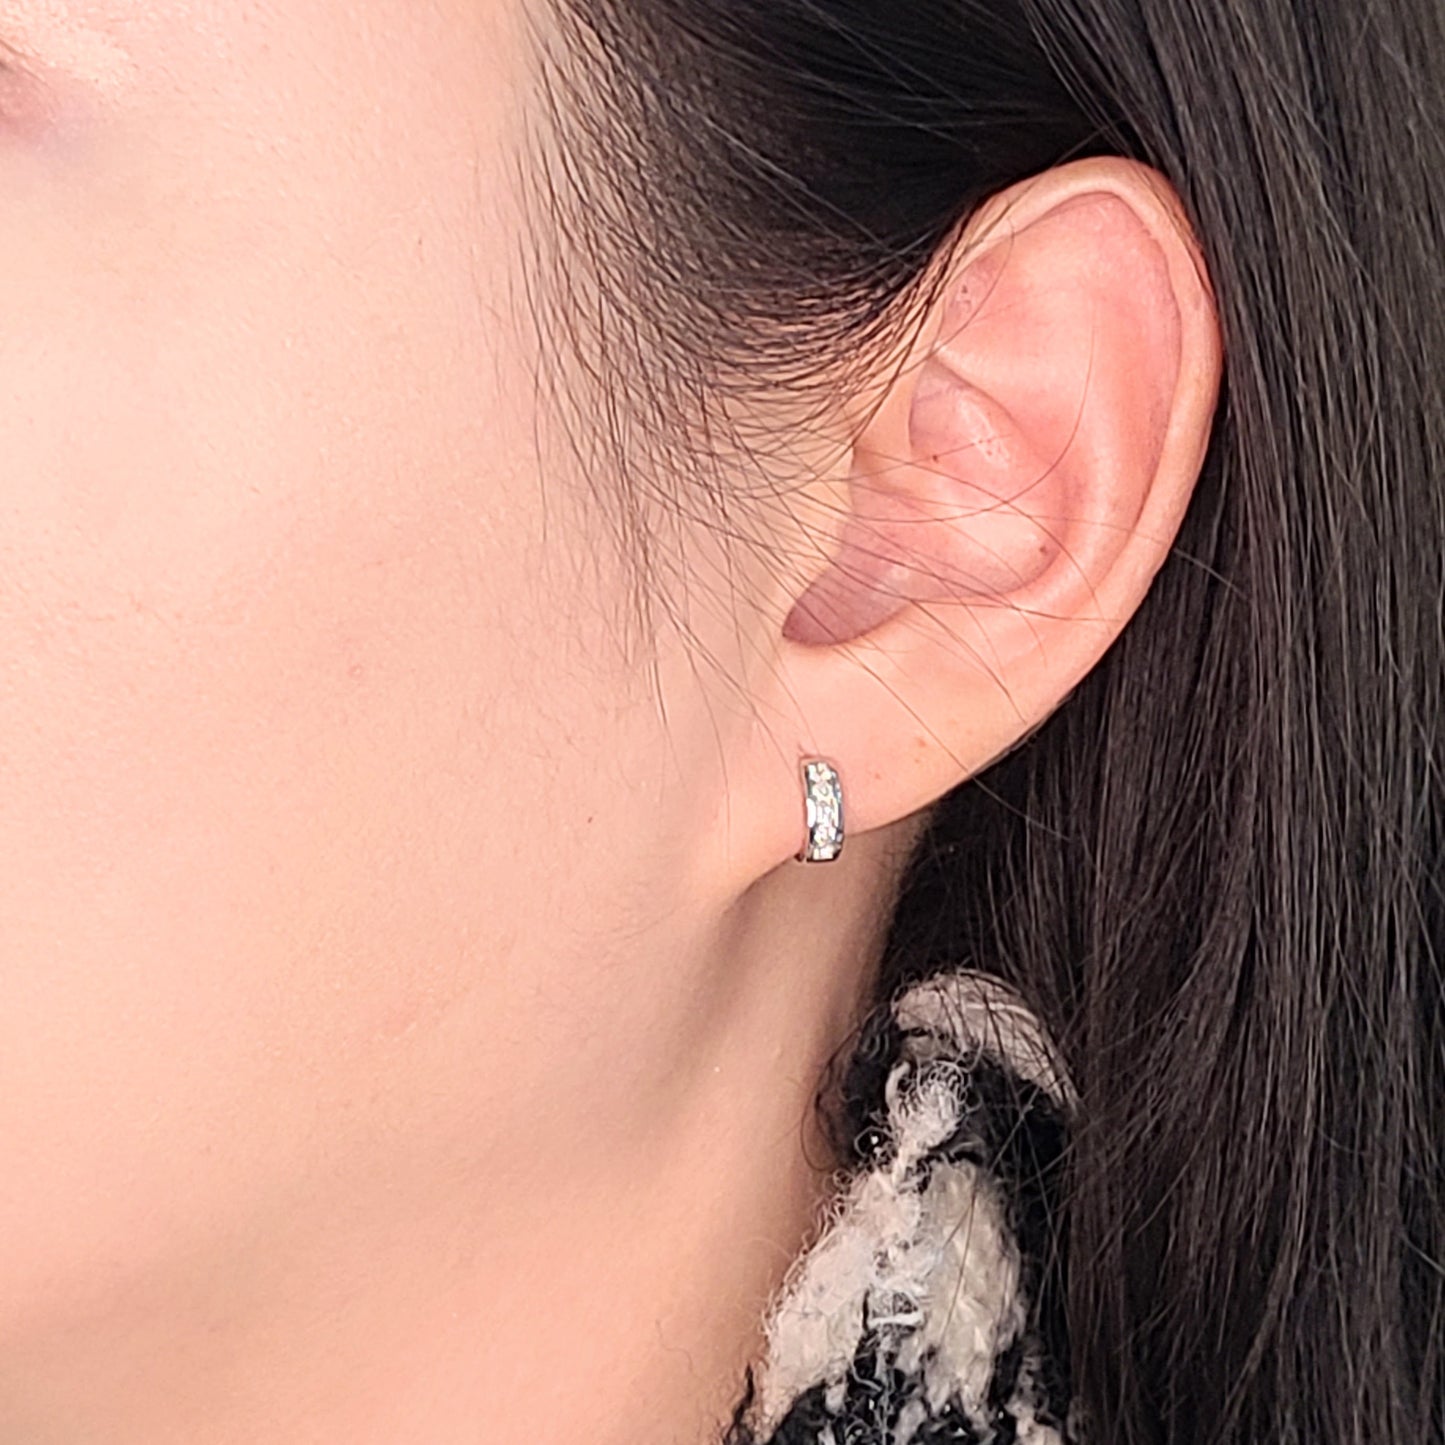 Diameter 9.5mm mini hoop earrings/dainty Diamond Cartilage simple Hoop Earrings/ Handmade 3mm Width Cartilage Hoop Earrings/Anniversary gift